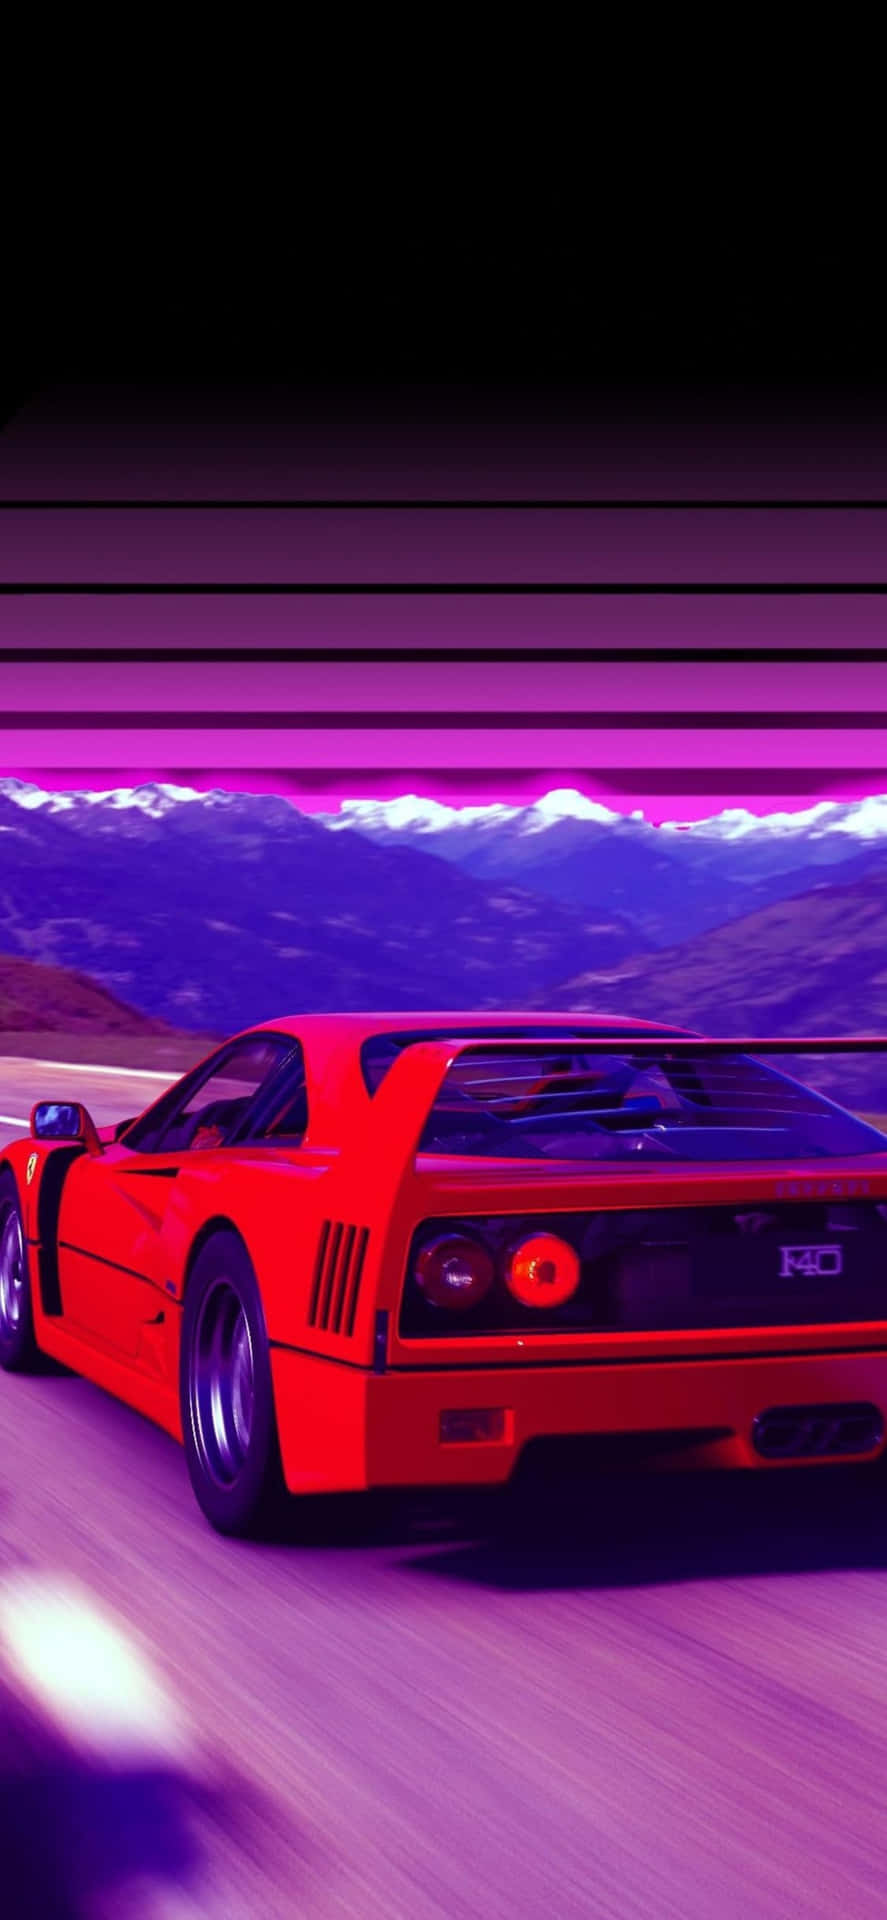 Iphone Xs Max Ferrari baggrund Rød Ferrari F40 lilla baggrund